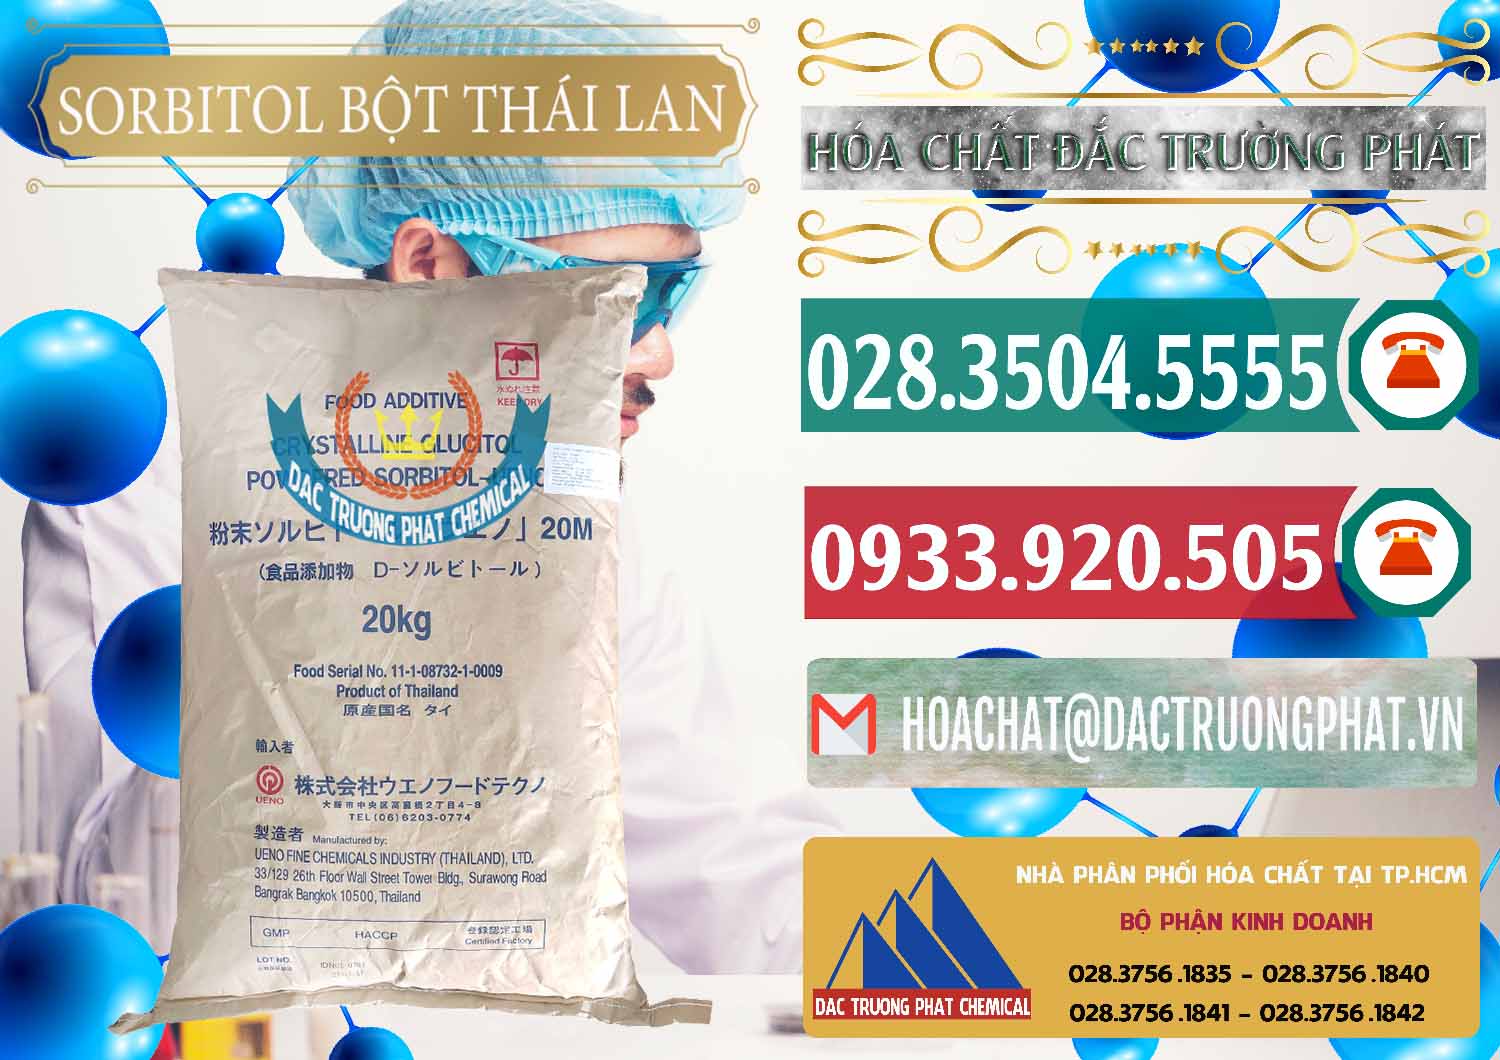 Cty chuyên cung cấp - bán D-Sorbitol Bột - C6H14O6 Food Grade Thái Lan Thailand - 0322 - Công ty chuyên phân phối và bán hóa chất tại TP.HCM - muabanhoachat.vn